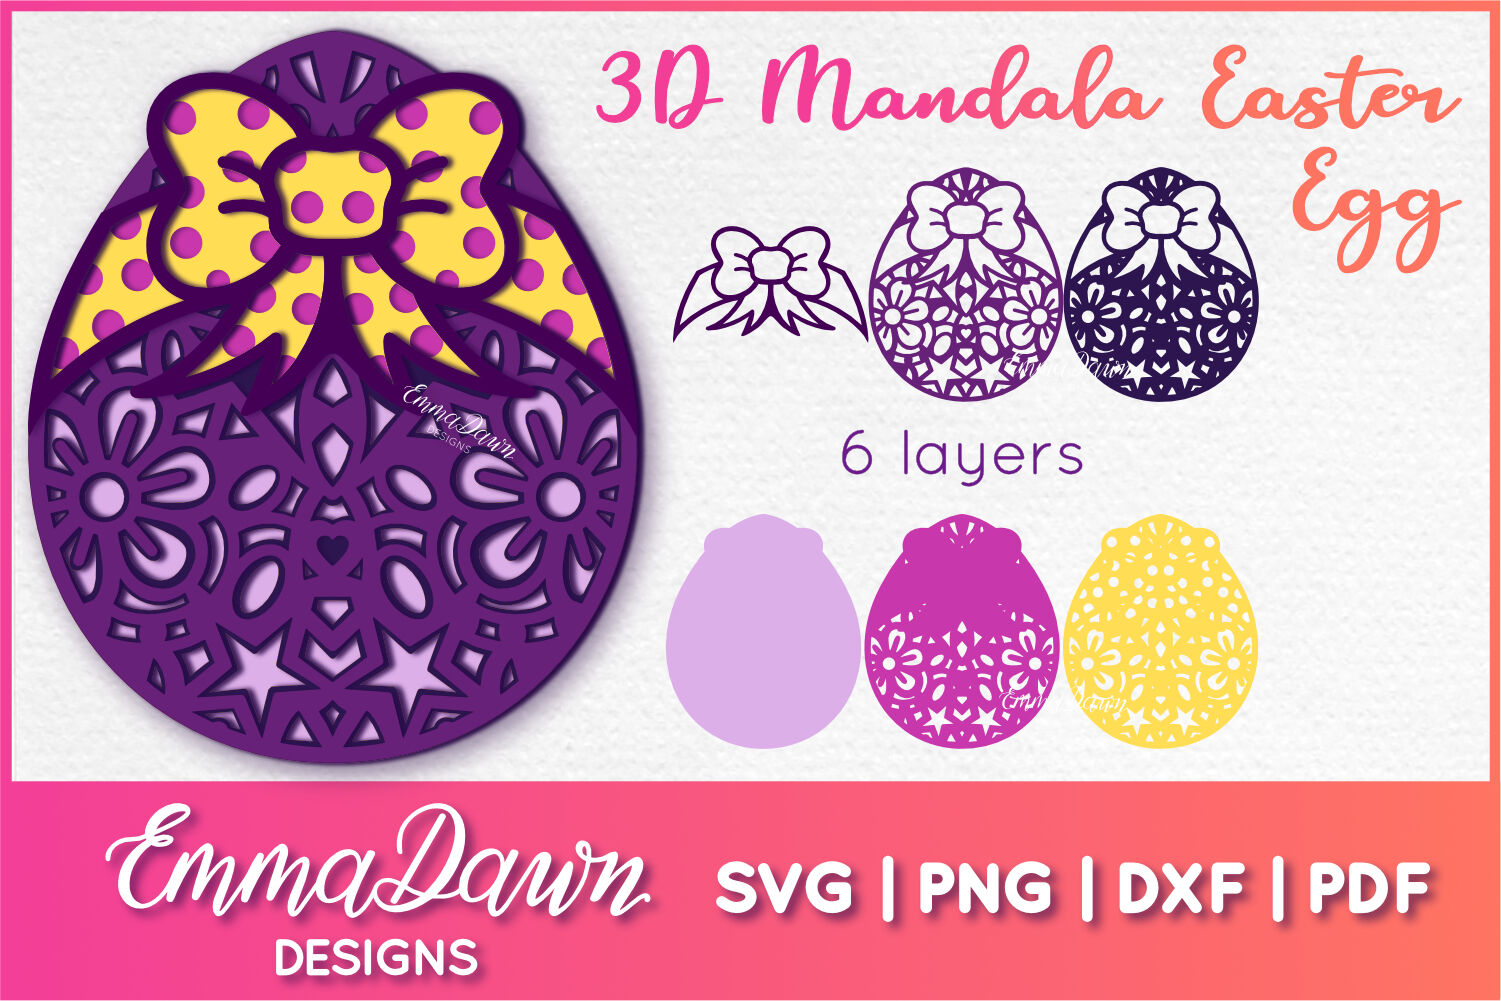 Download 3D Mandala Easter Egg Svg, 3D SVG, 3D Easter Egg Svg By Emma Dawn Designs | TheHungryJPEG.com